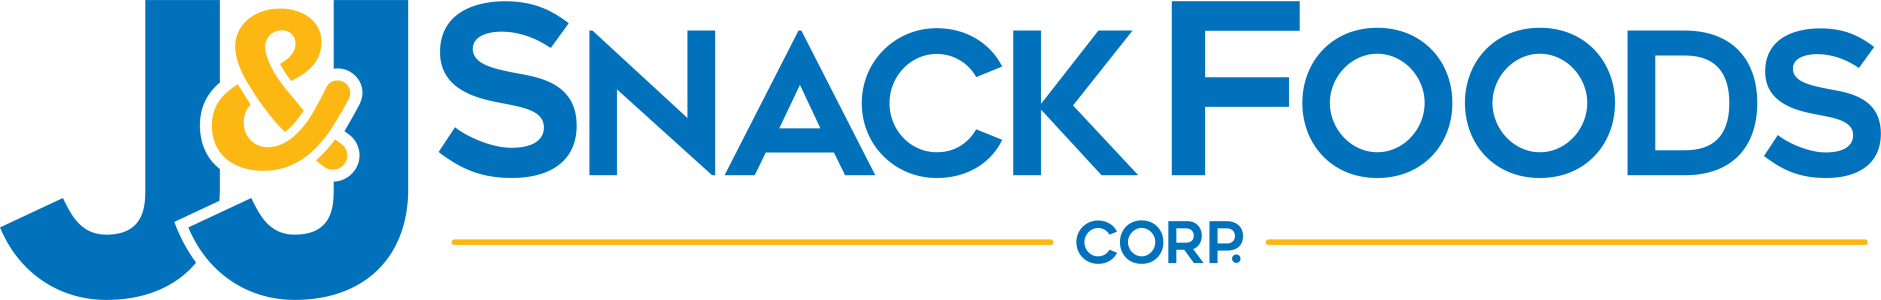 Logotipo de JJ Snacks Logotipo